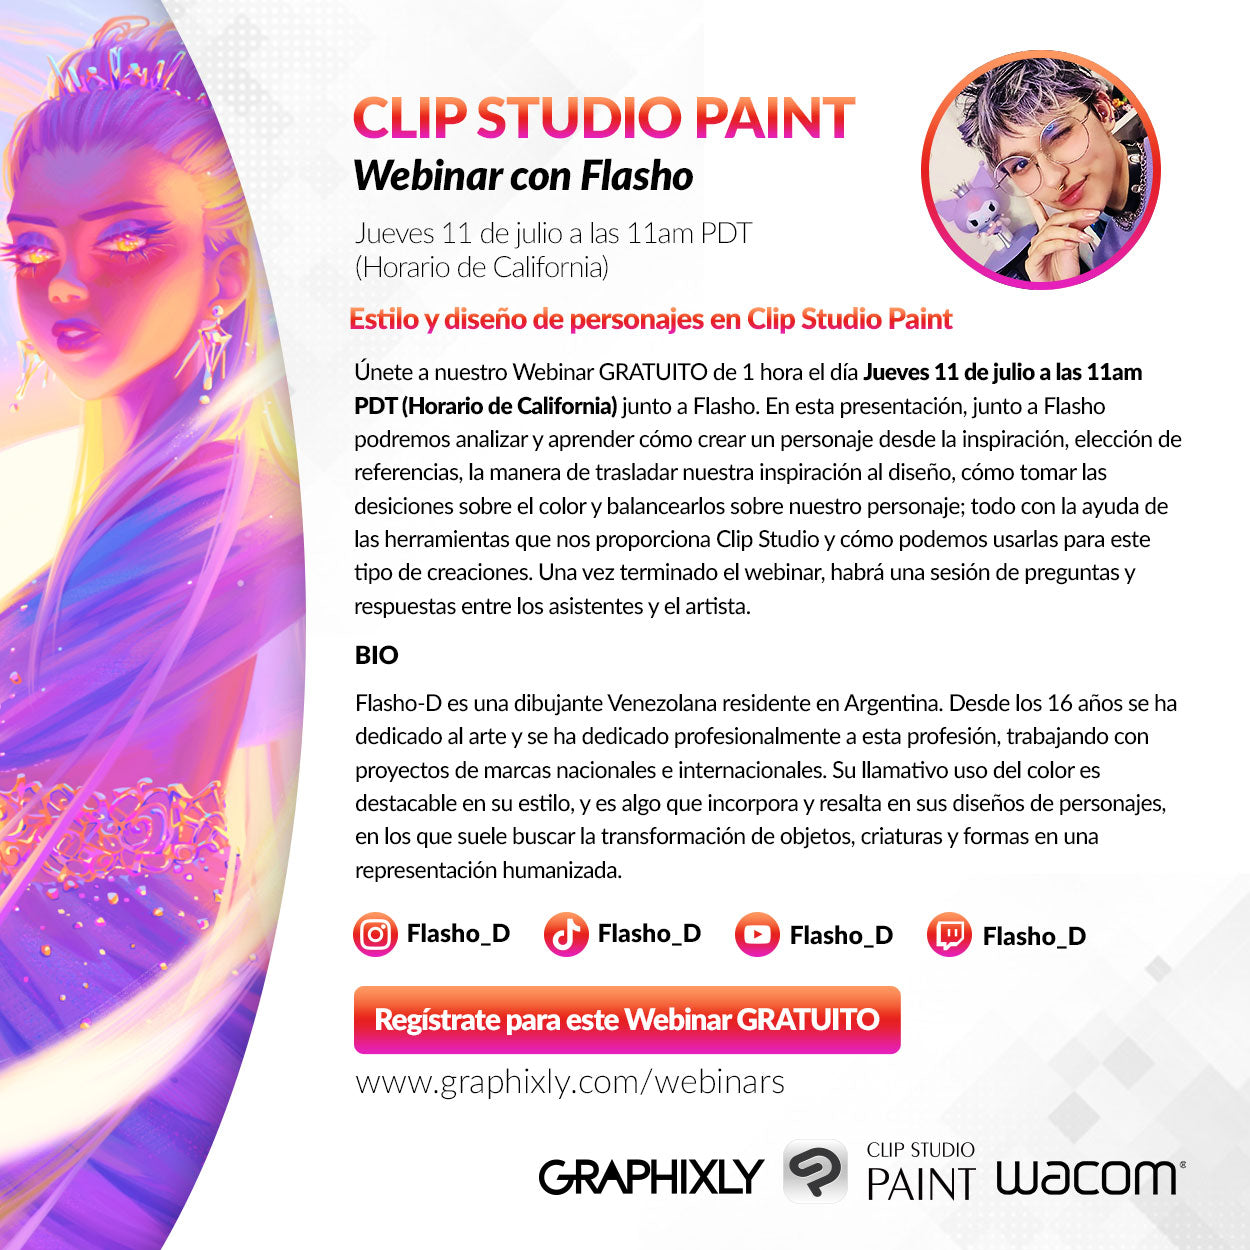 Webinar en español - Estilo y diseño de personajes en Clip Studio Paint con Flasho